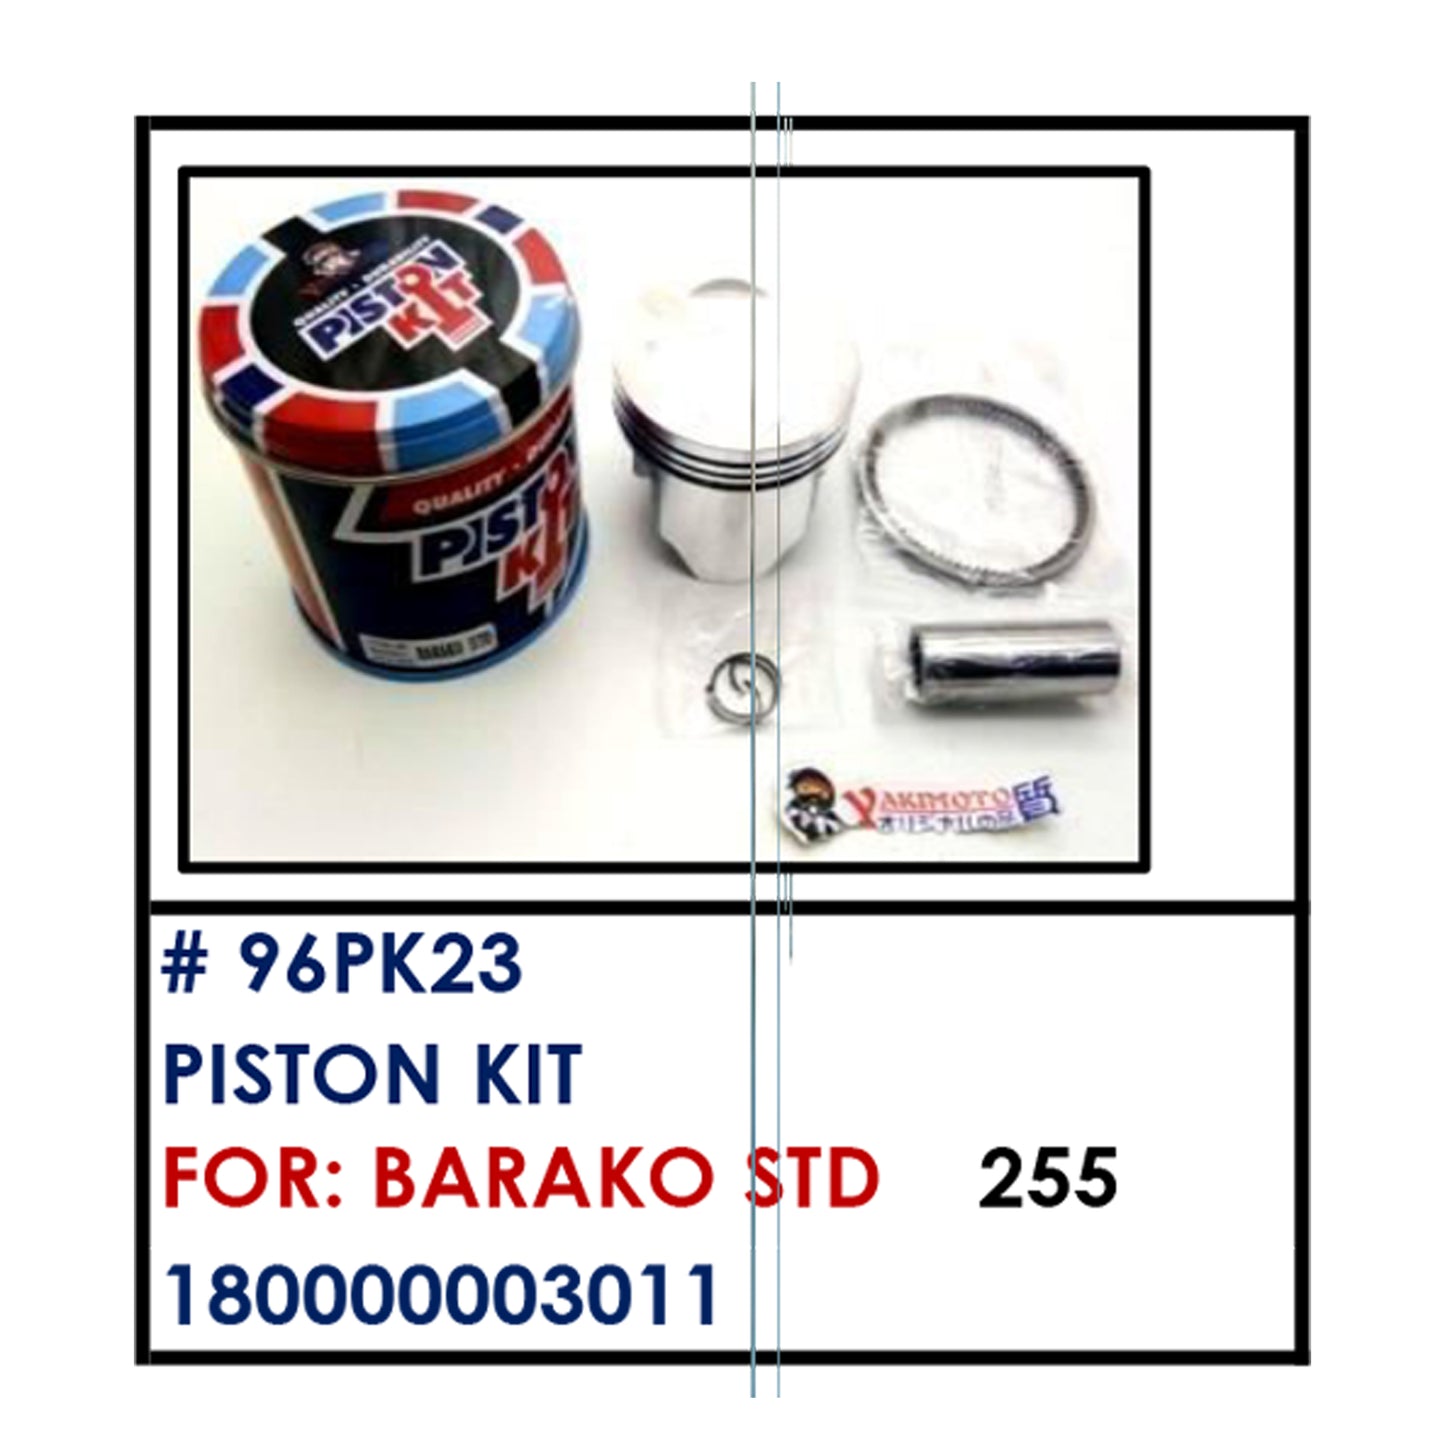 PISTON KIT (96PK23) - BARAKO STD | YAKIMOTO - BESTPARTS.PH